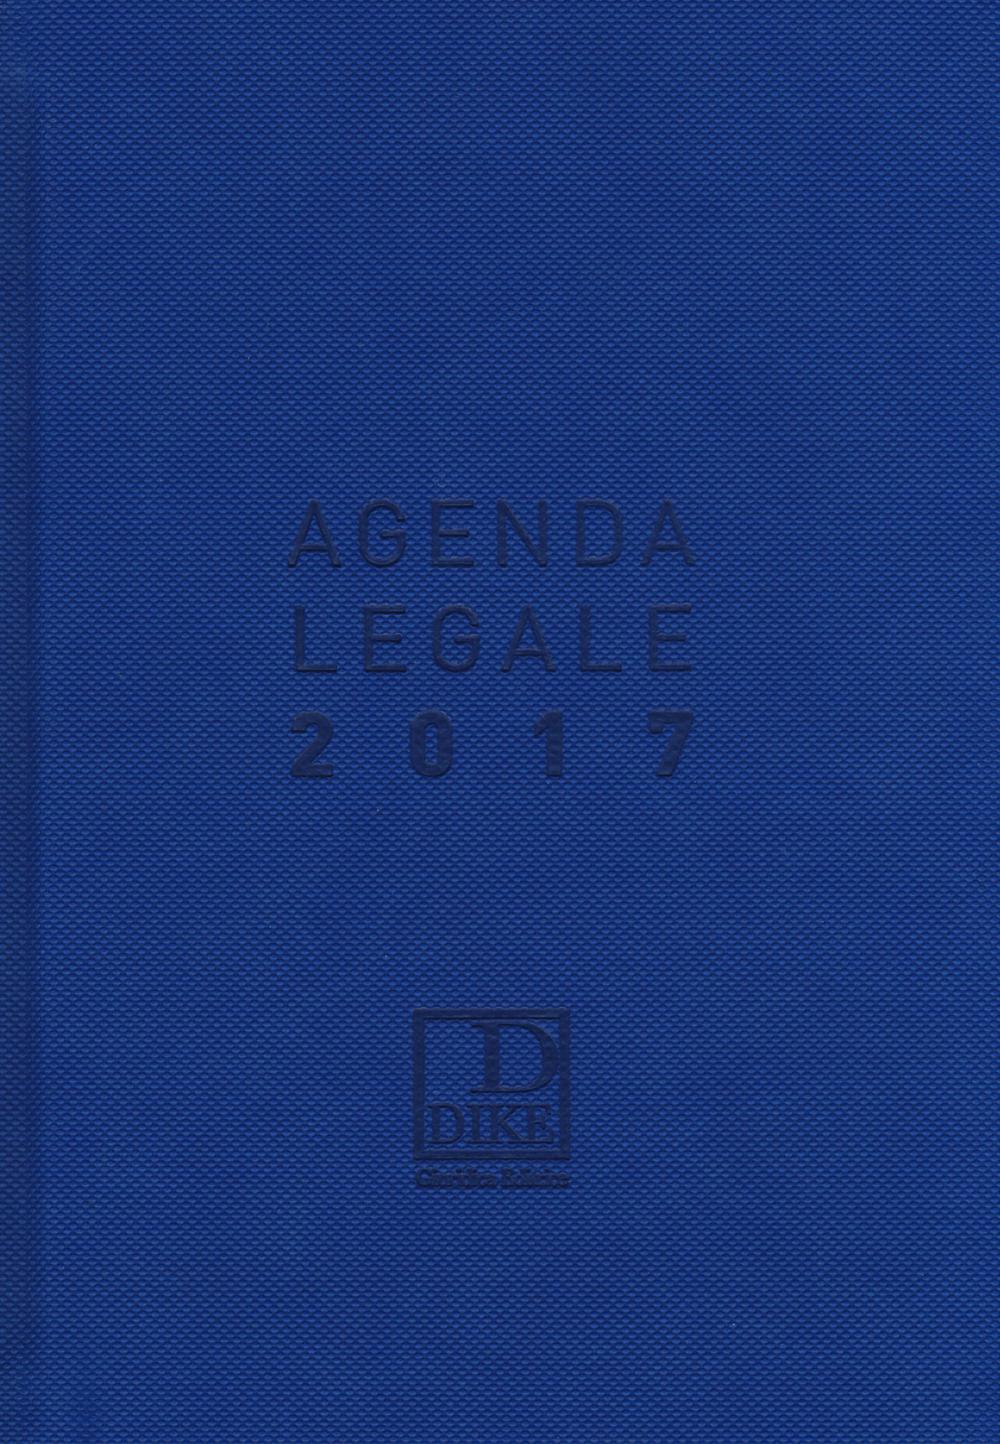 Agenda legale 2017. Ediz. maior